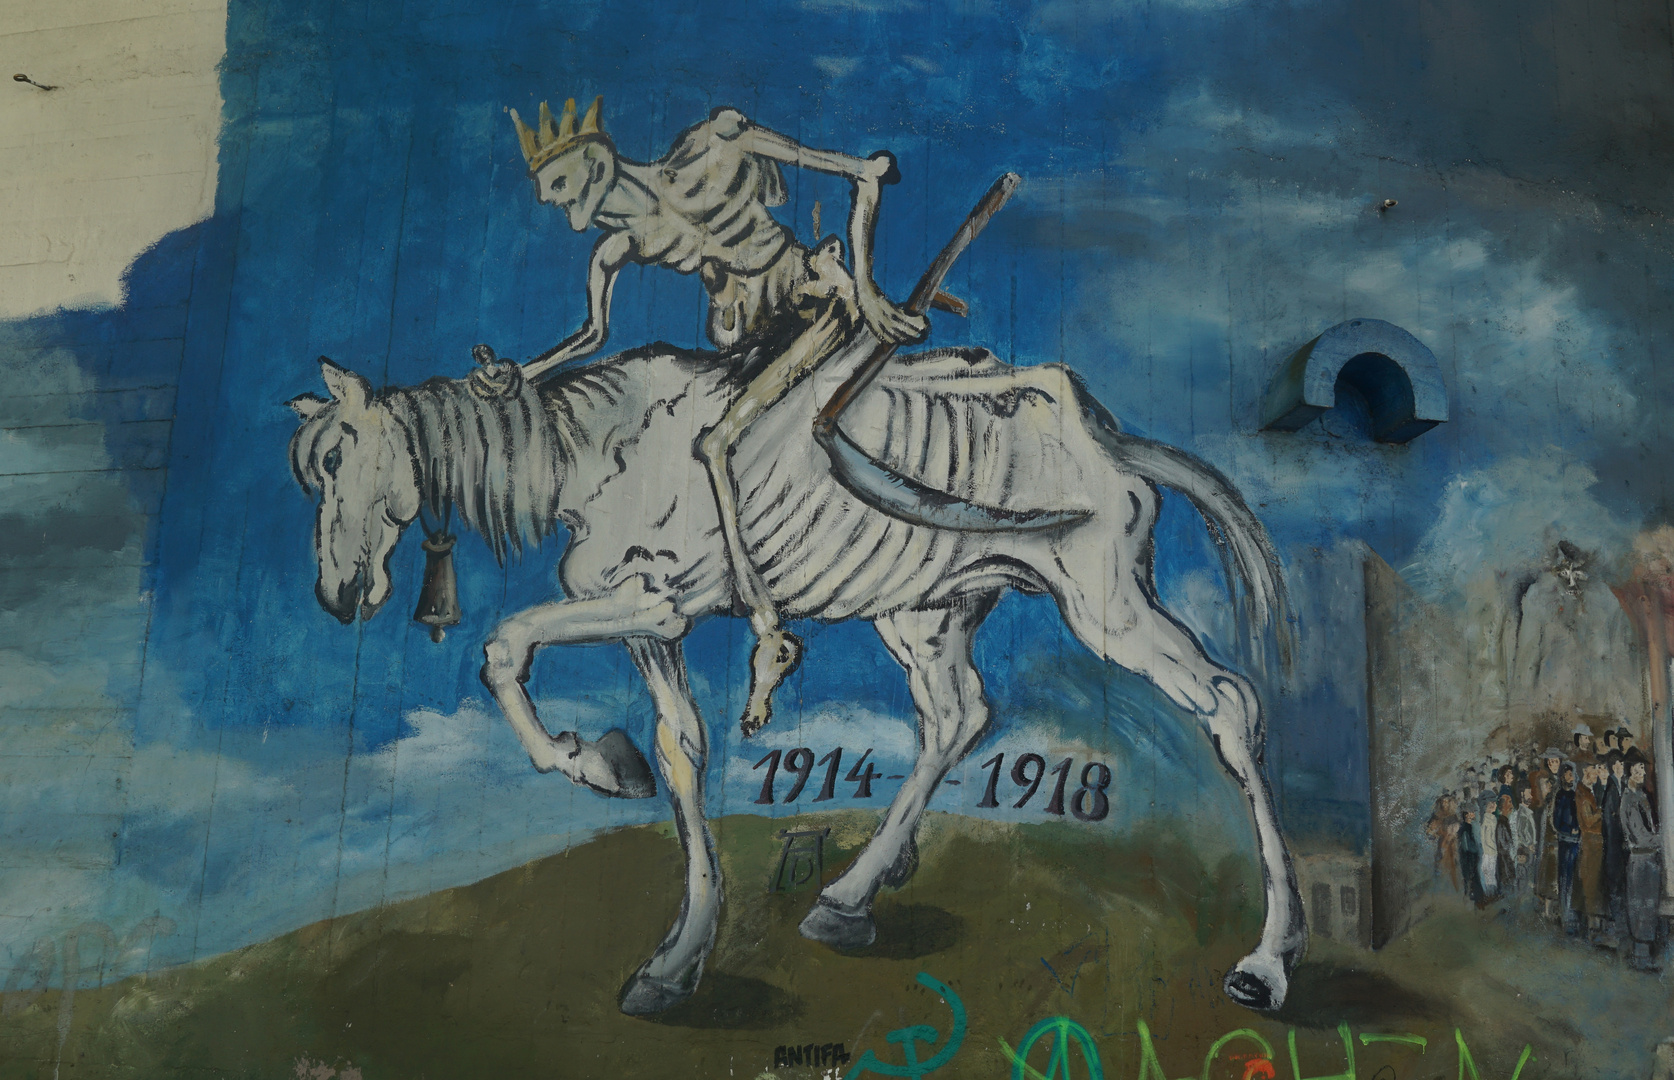 Aachens Geschichte an der Wand